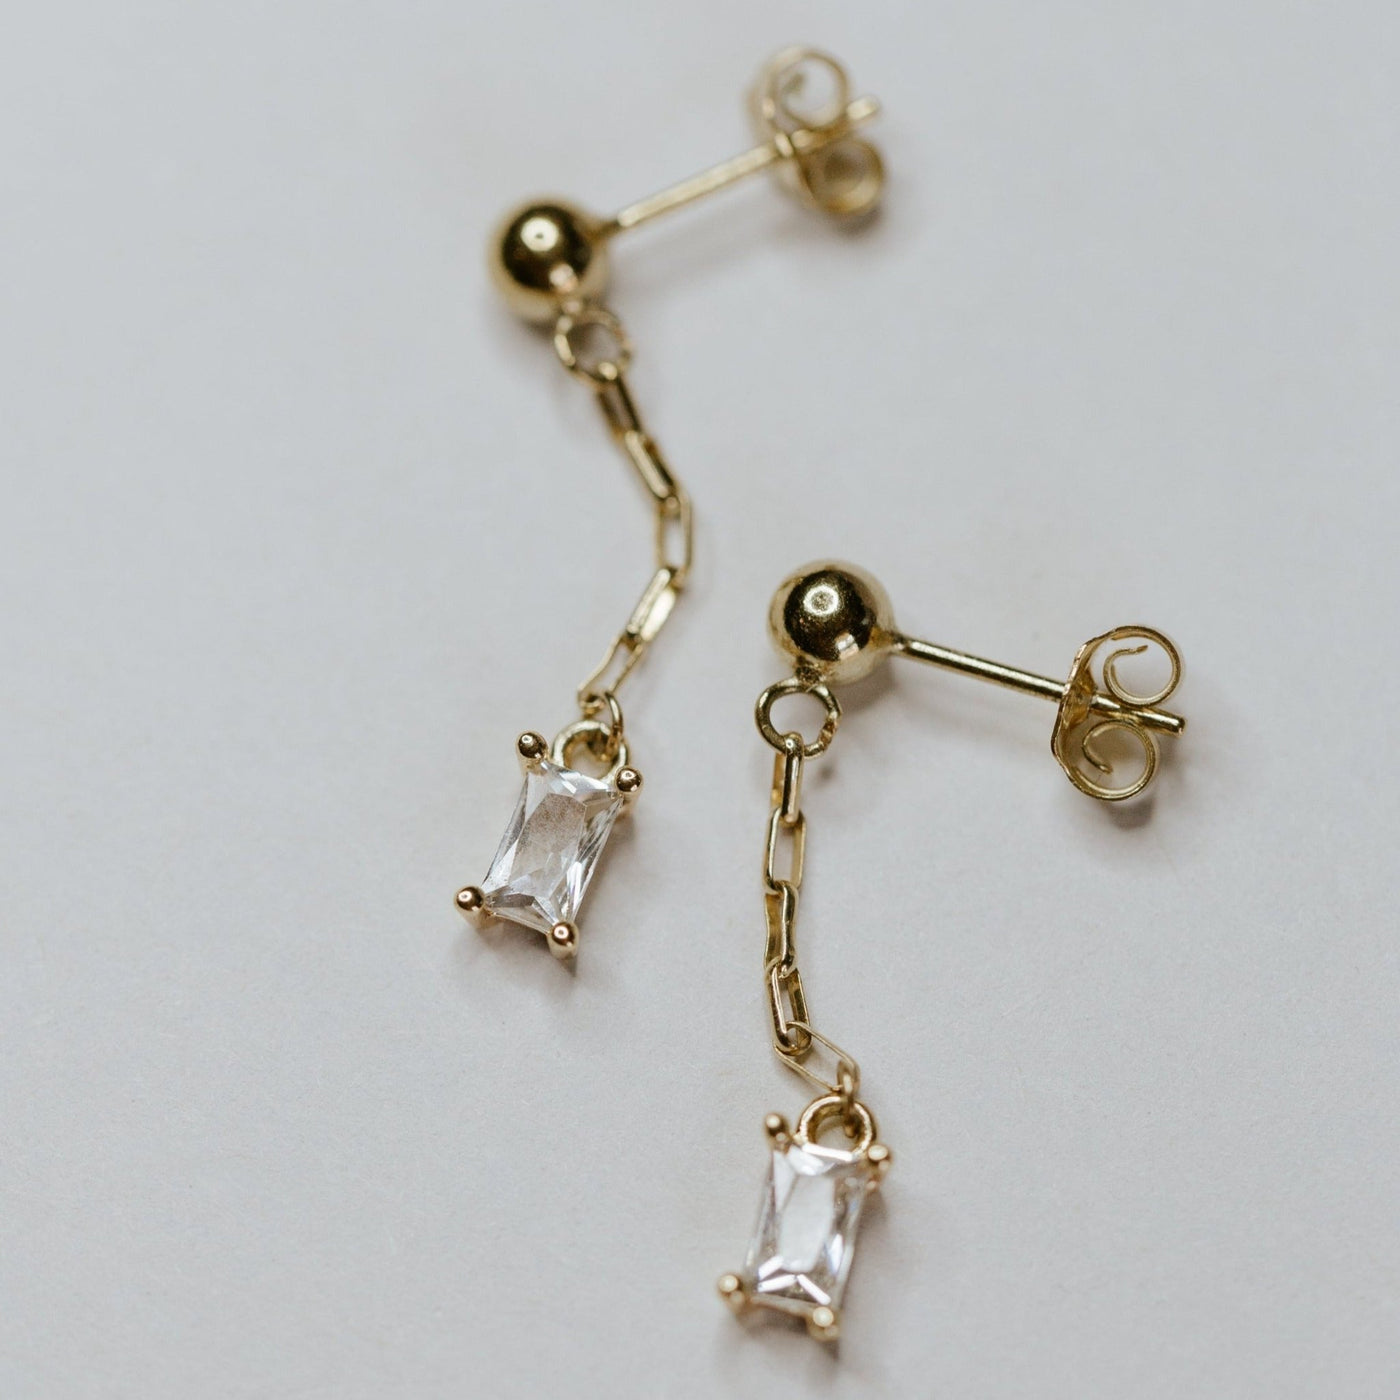 Villach Earrings - Jillian Leigh Jewellery - earrings